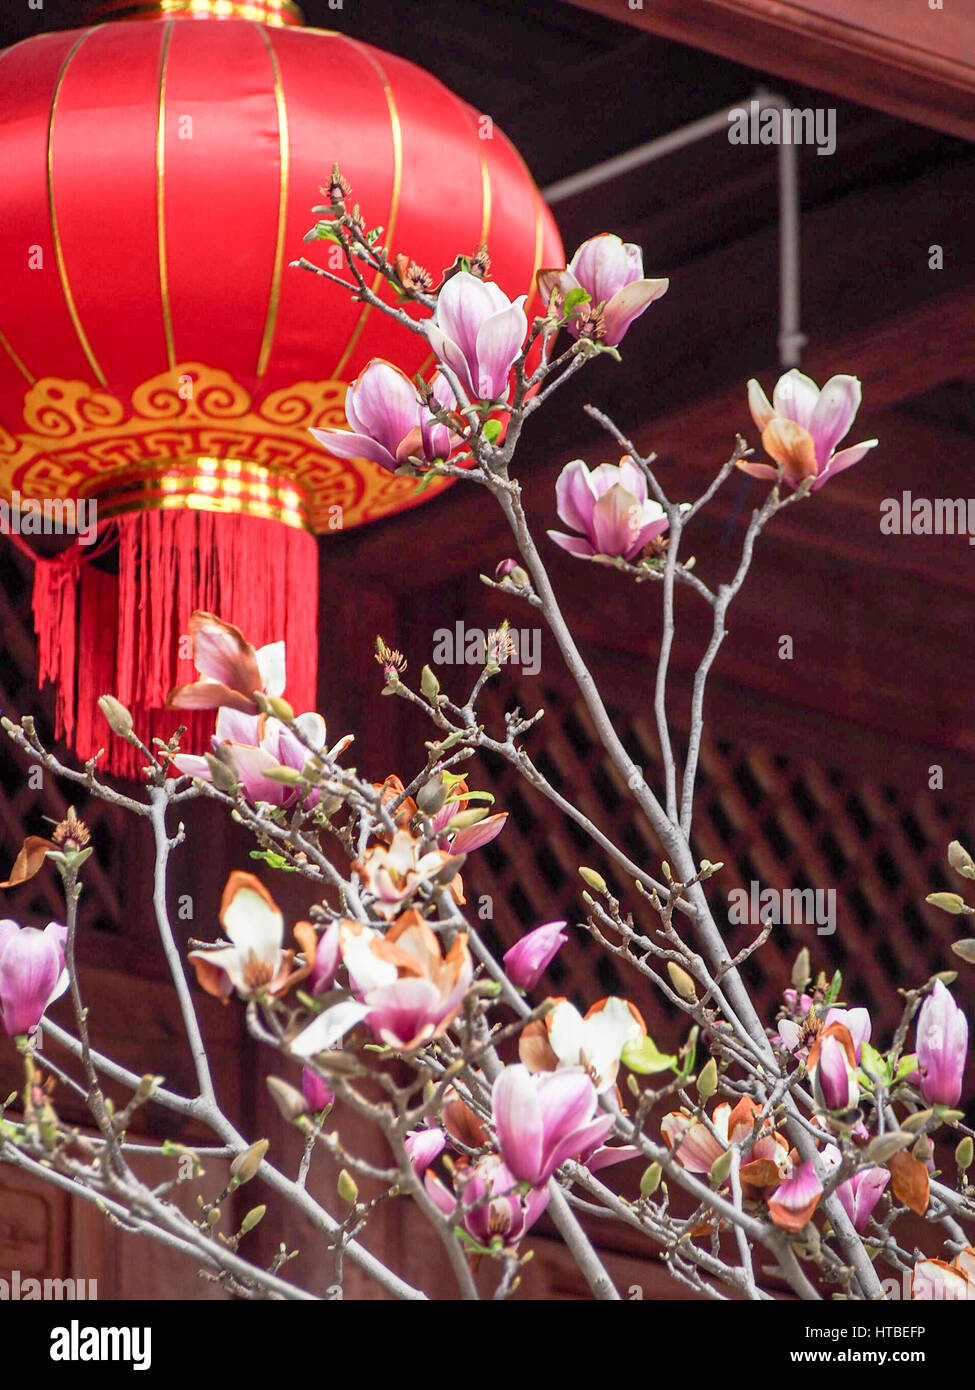 Rosa Magnolienblüten vor ein roter und goldener Lampion in der Feier des Lunar New Year in Dali China. Stockfoto